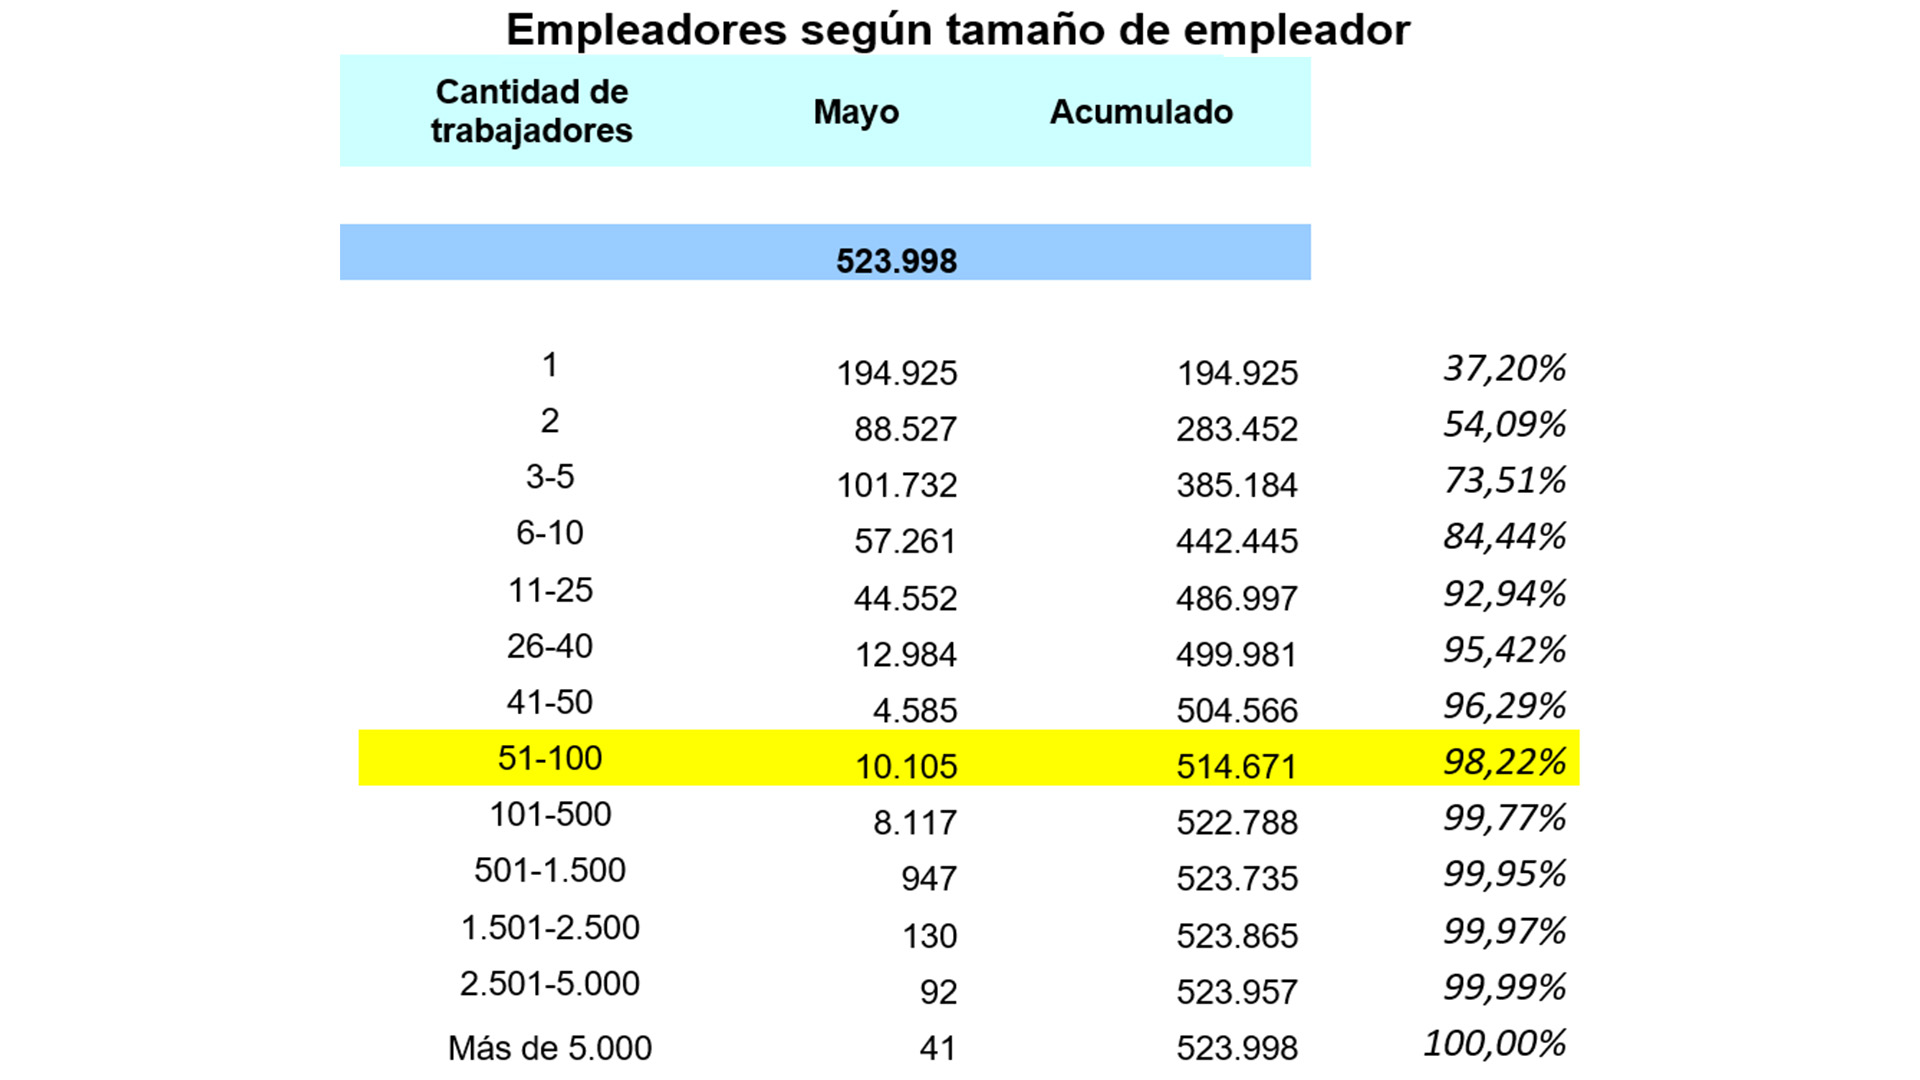 Más del 98% del empleo privado formal en la Argentina es en empresas que cuentan con hasta 100 empleados. Es el amplio universo al que apunta el "Puente Empleo"